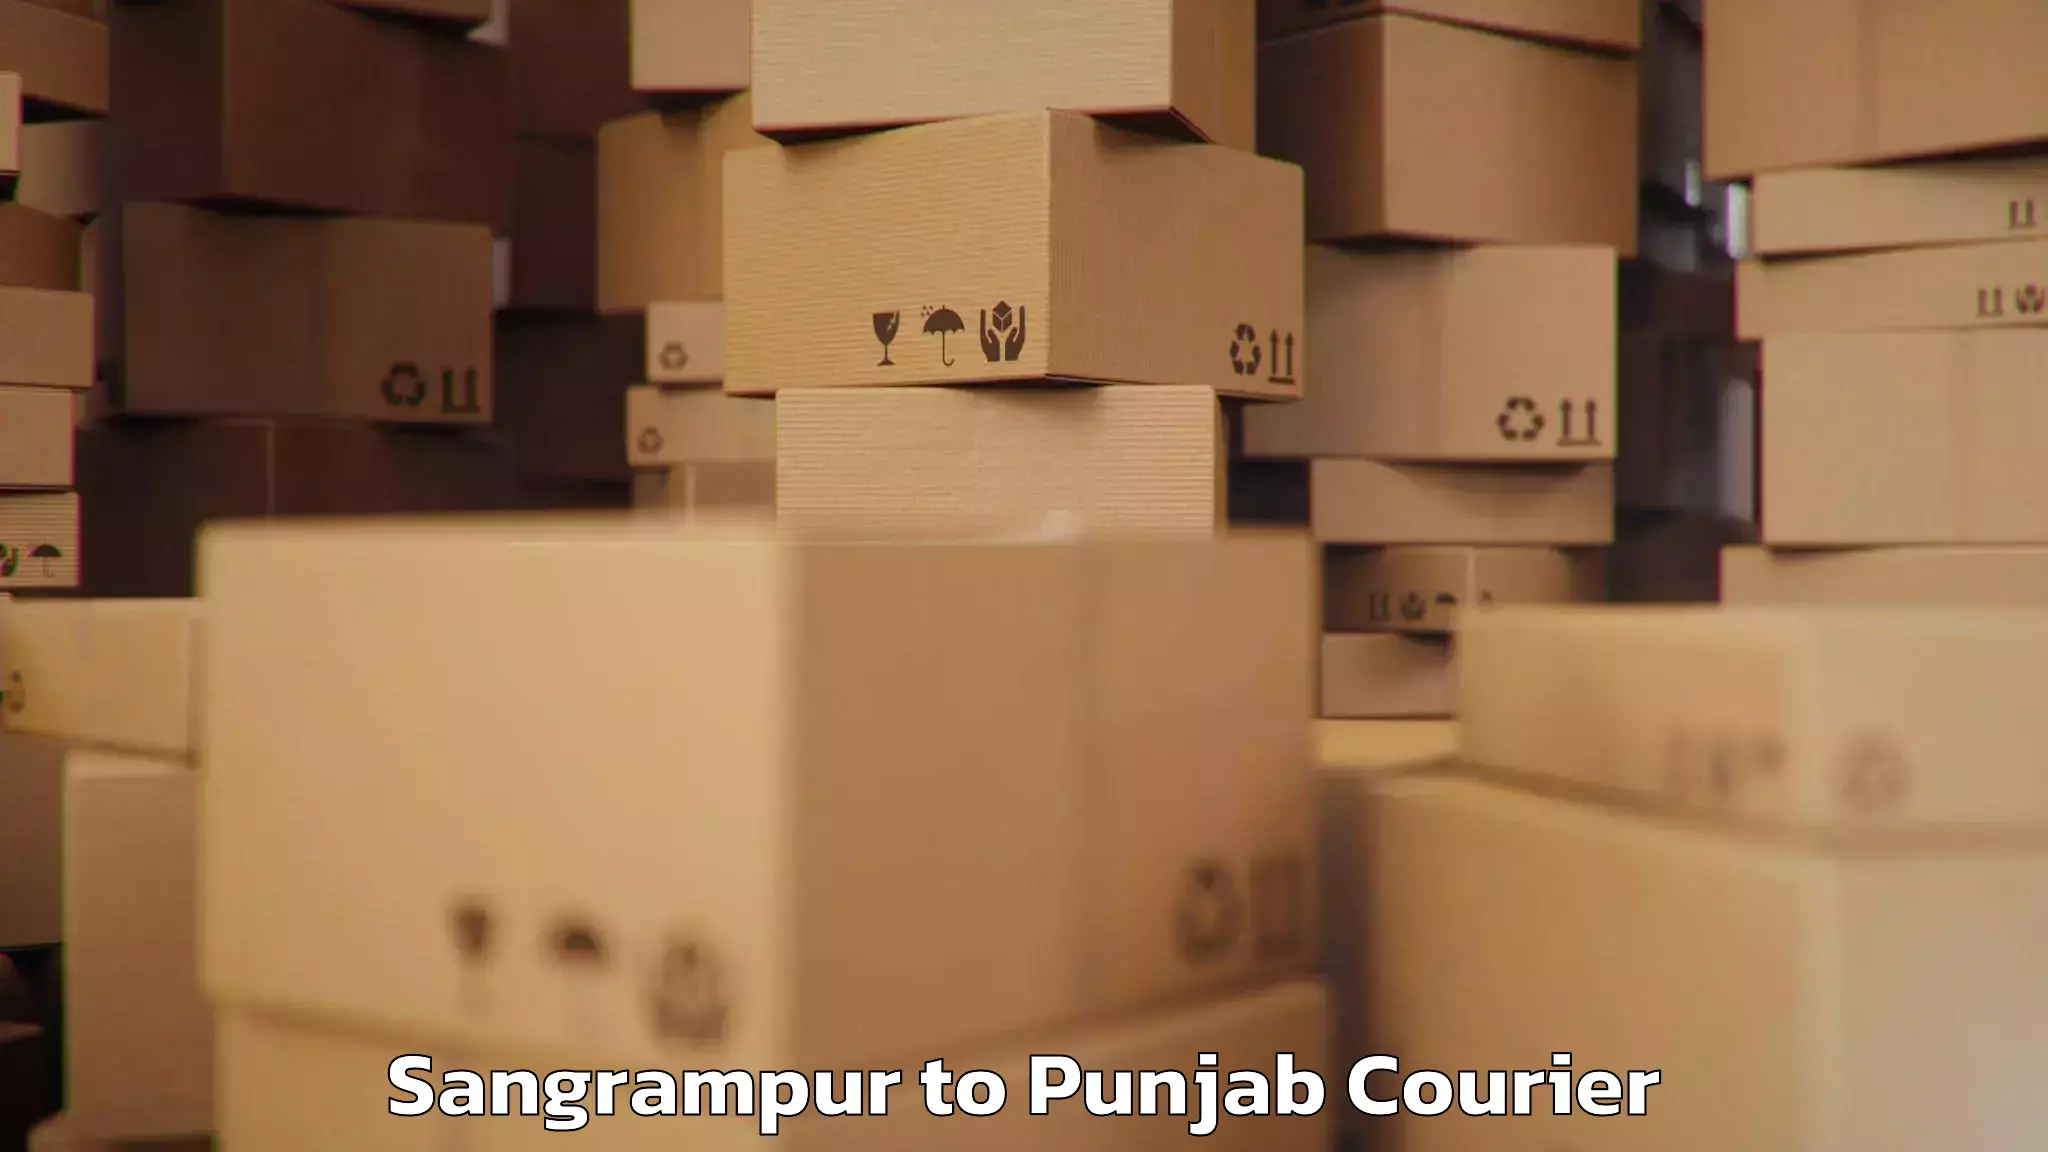 Baggage shipping service Sangrampur to Talwara